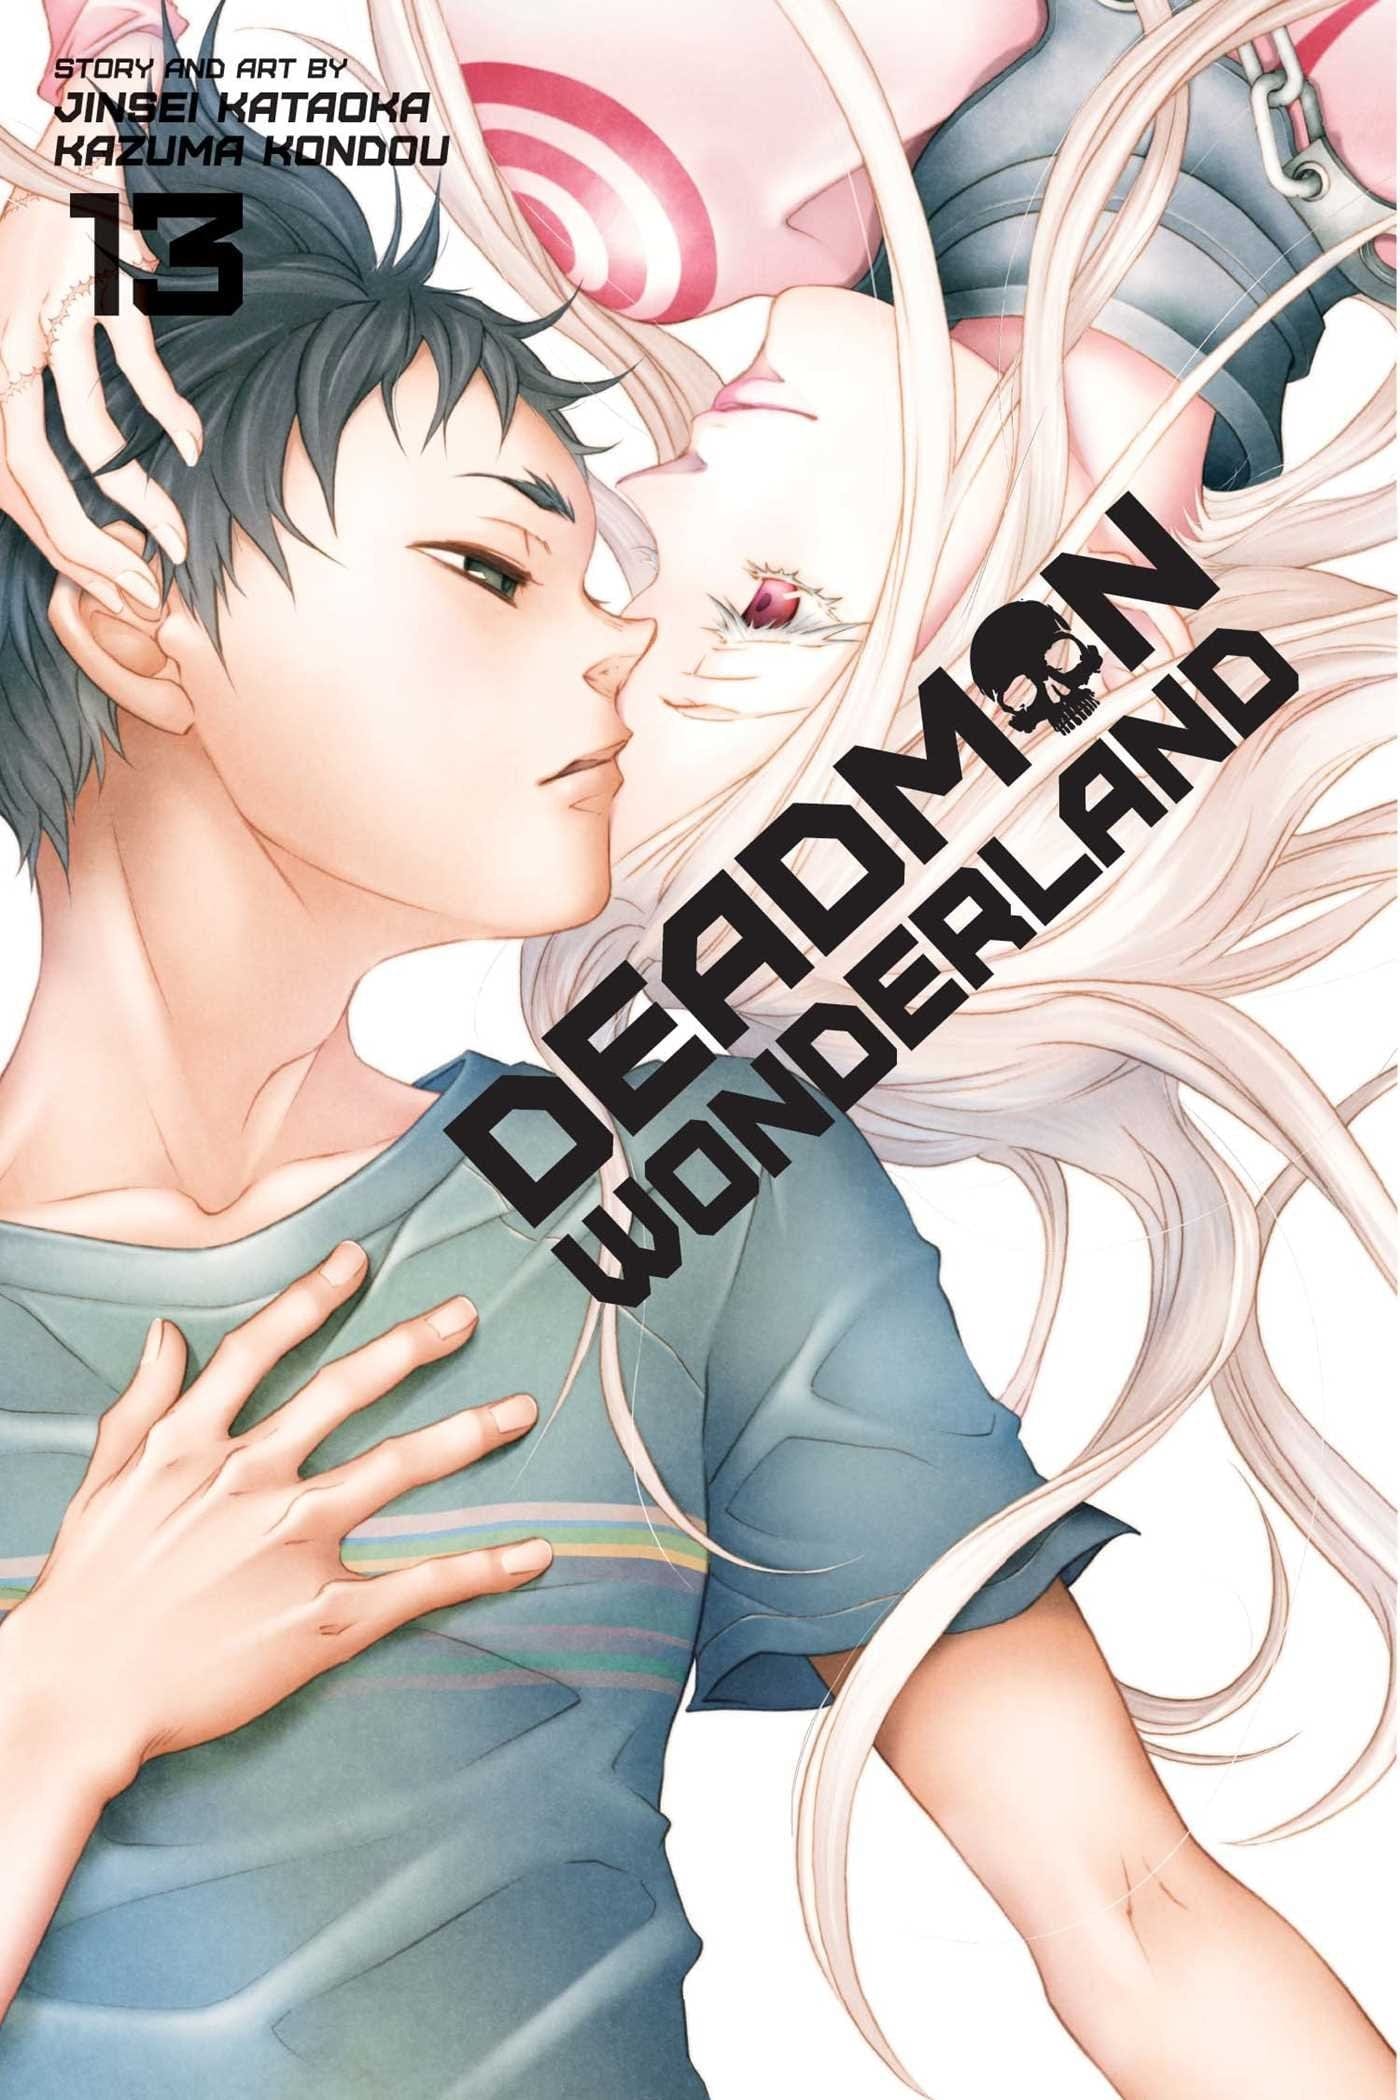 Deadman Wonderland Vol. 13 - Third Eye